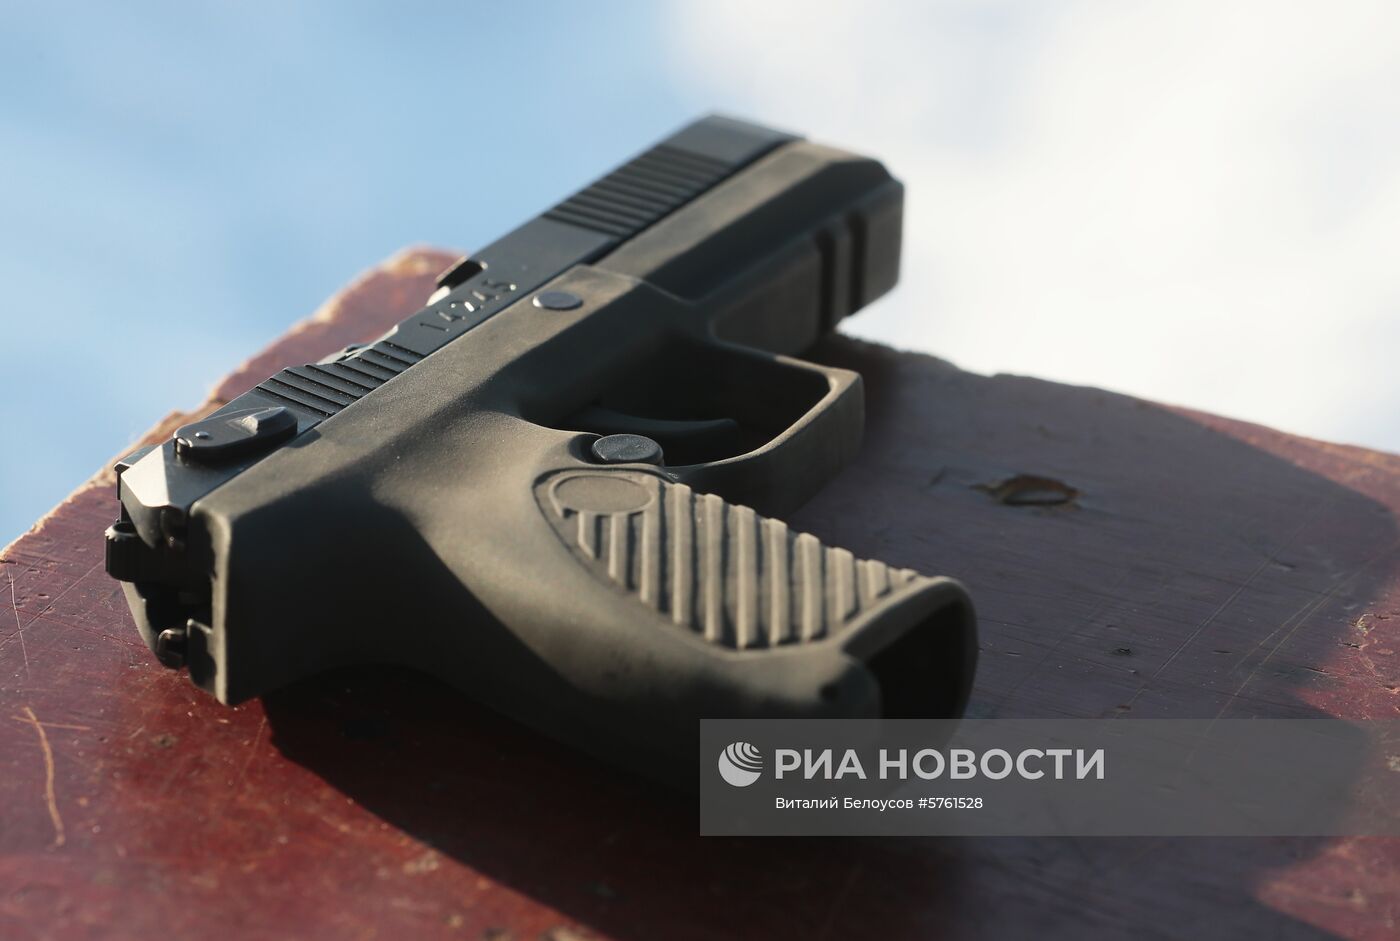 Презентация нового пистолета "Удав"